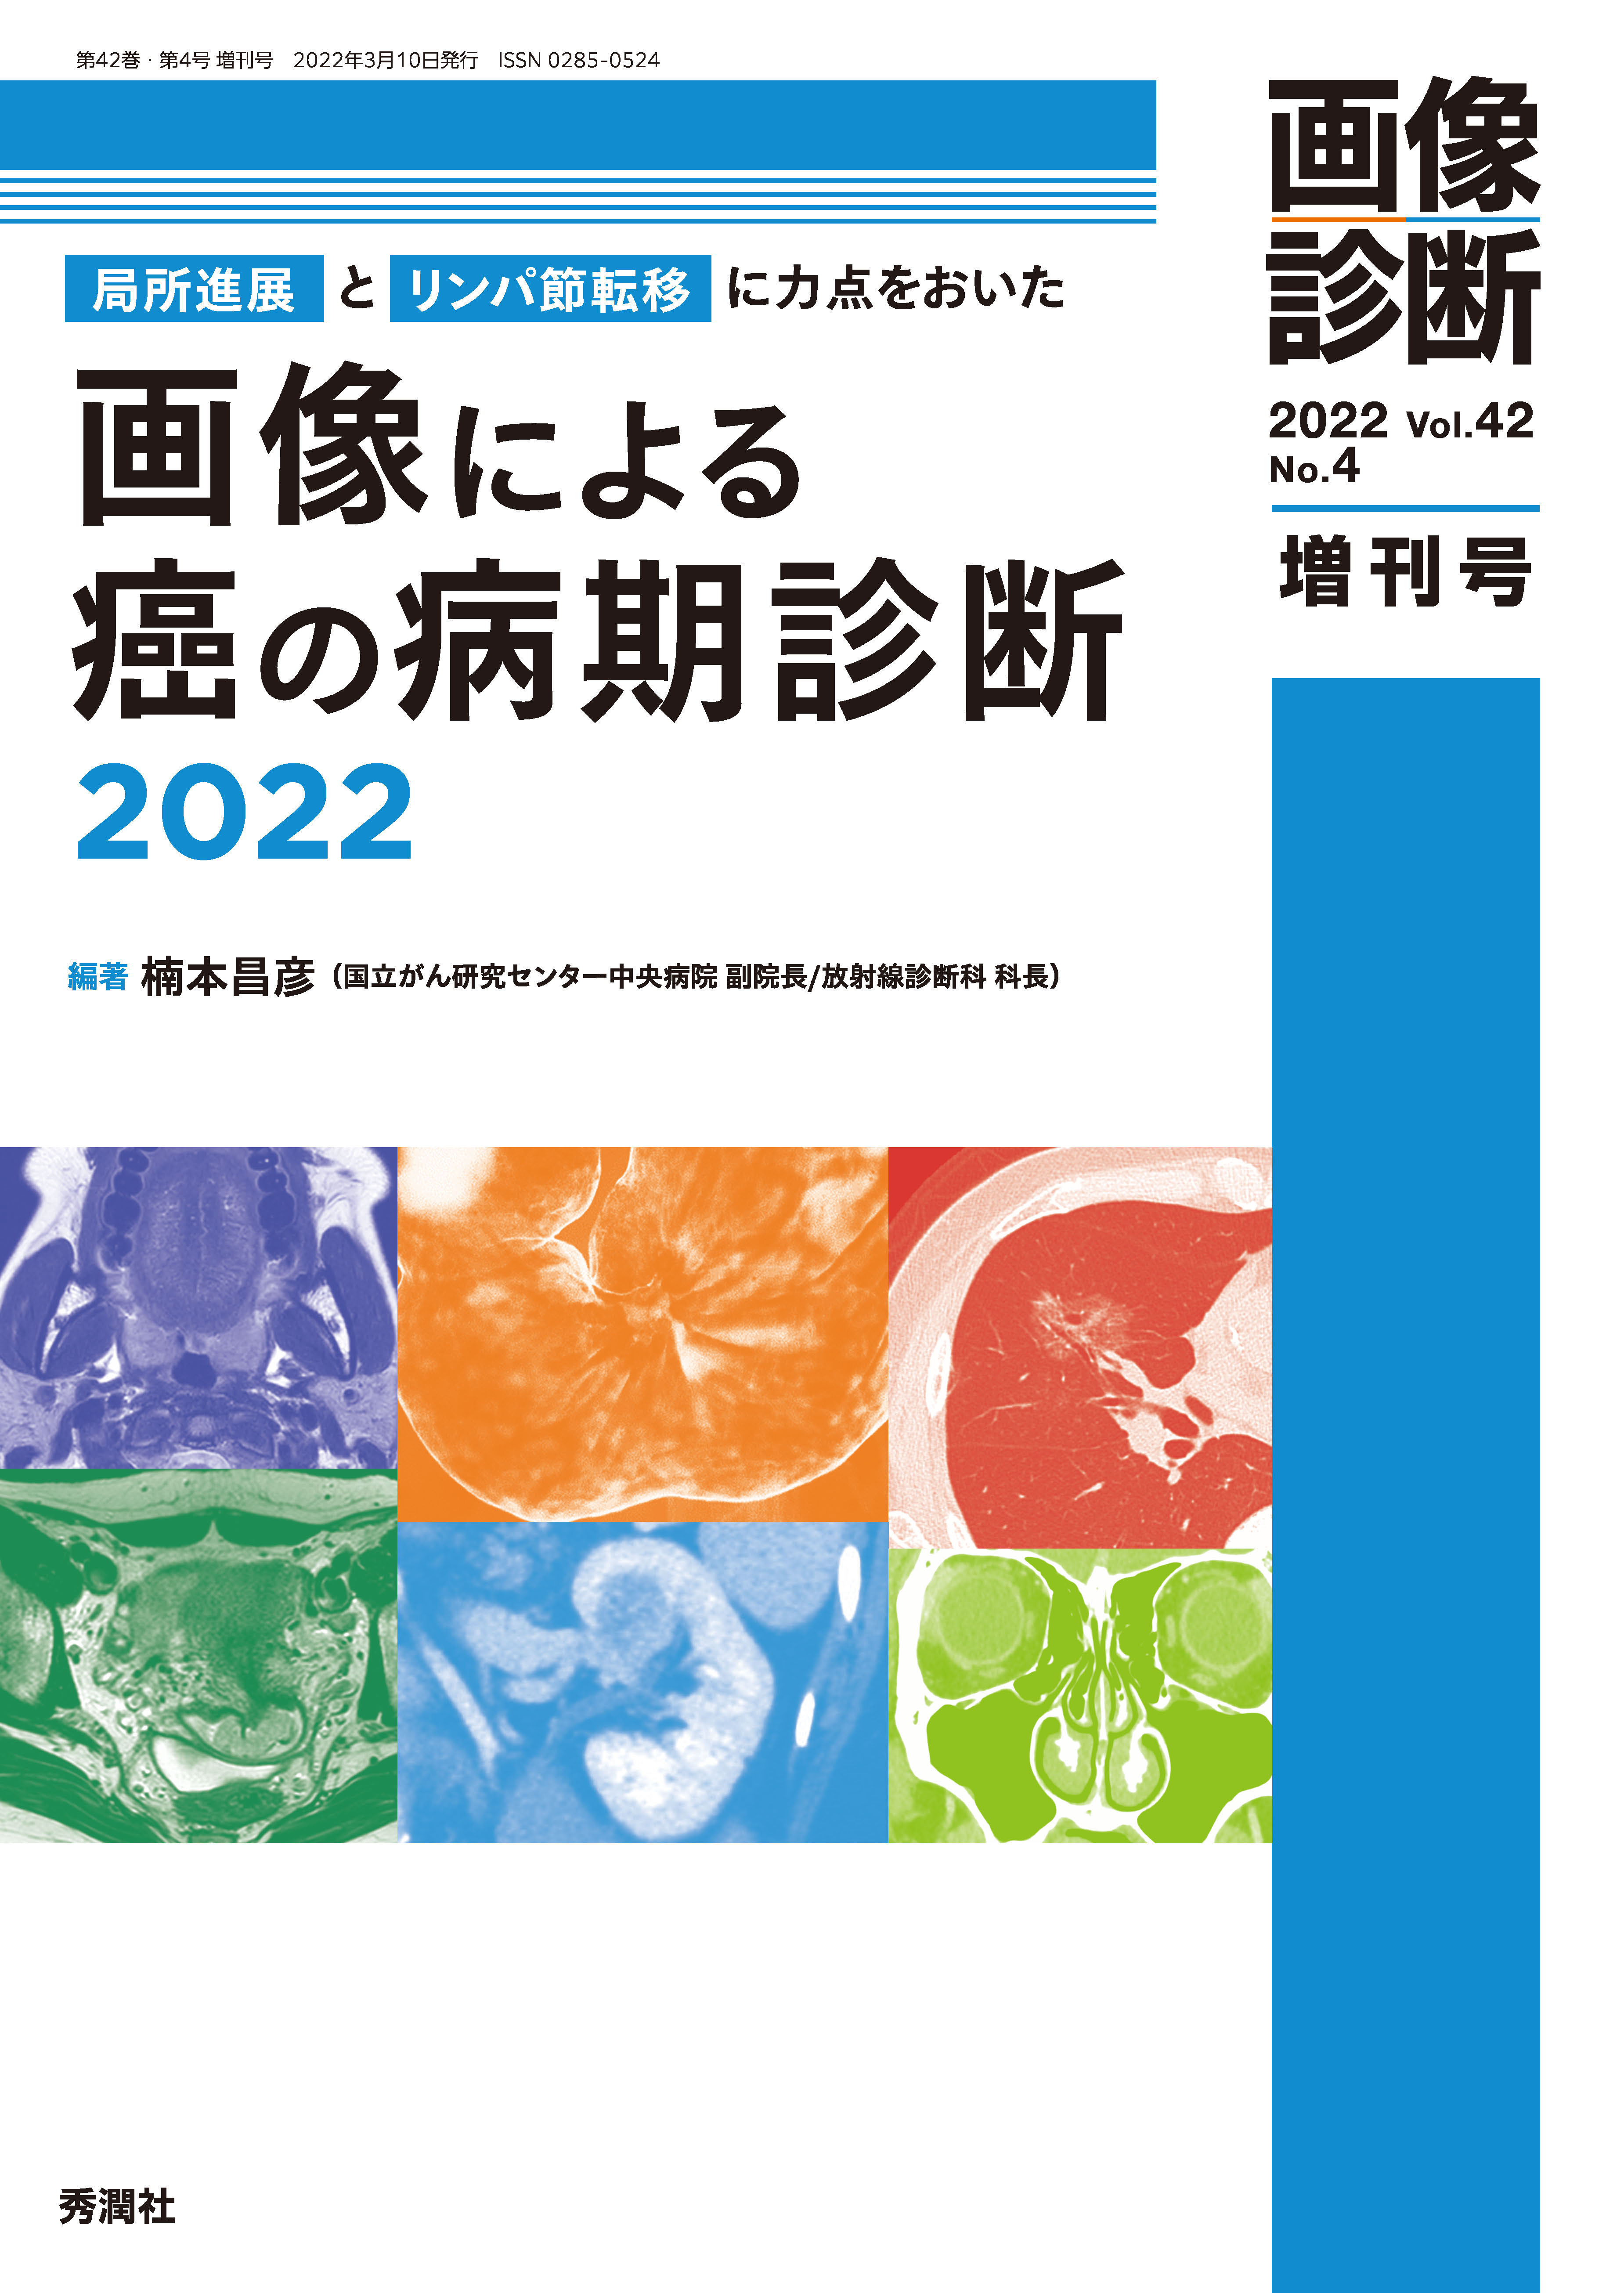 画像診断 Vol.42 No.4（2022年増刊号）【電子版】 | 医書.jp